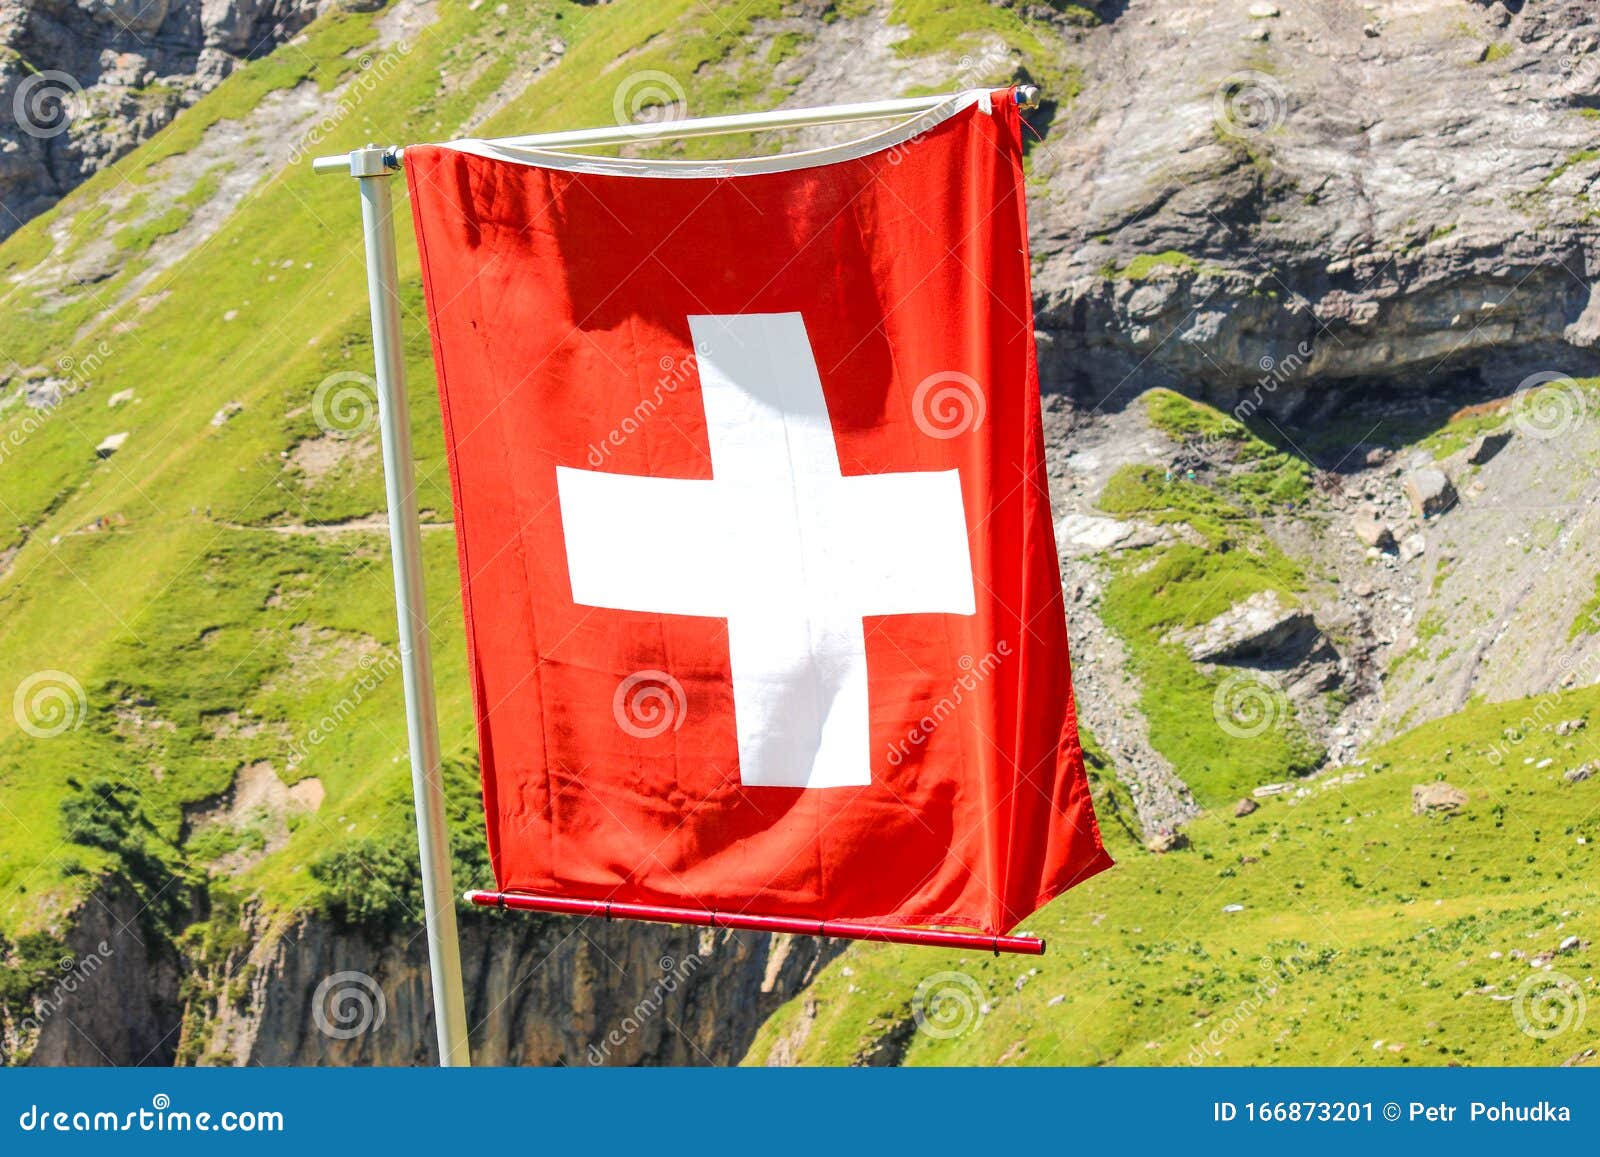 Hãy đến với hình ảnh của quốc kỳ Thụy Sĩ, với màu đỏ và trắng tươi sáng thu hút mọi ánh nhìn. Quốc kỳ Thụy Sĩ đại diện cho vẻ đẹp của nước này, với cảnh quan đồi núi và hồ nước tuyệt đẹp. Chắc chắn rằng bạn sẽ có một trải nghiệm thú vị khi xem hình ảnh này!